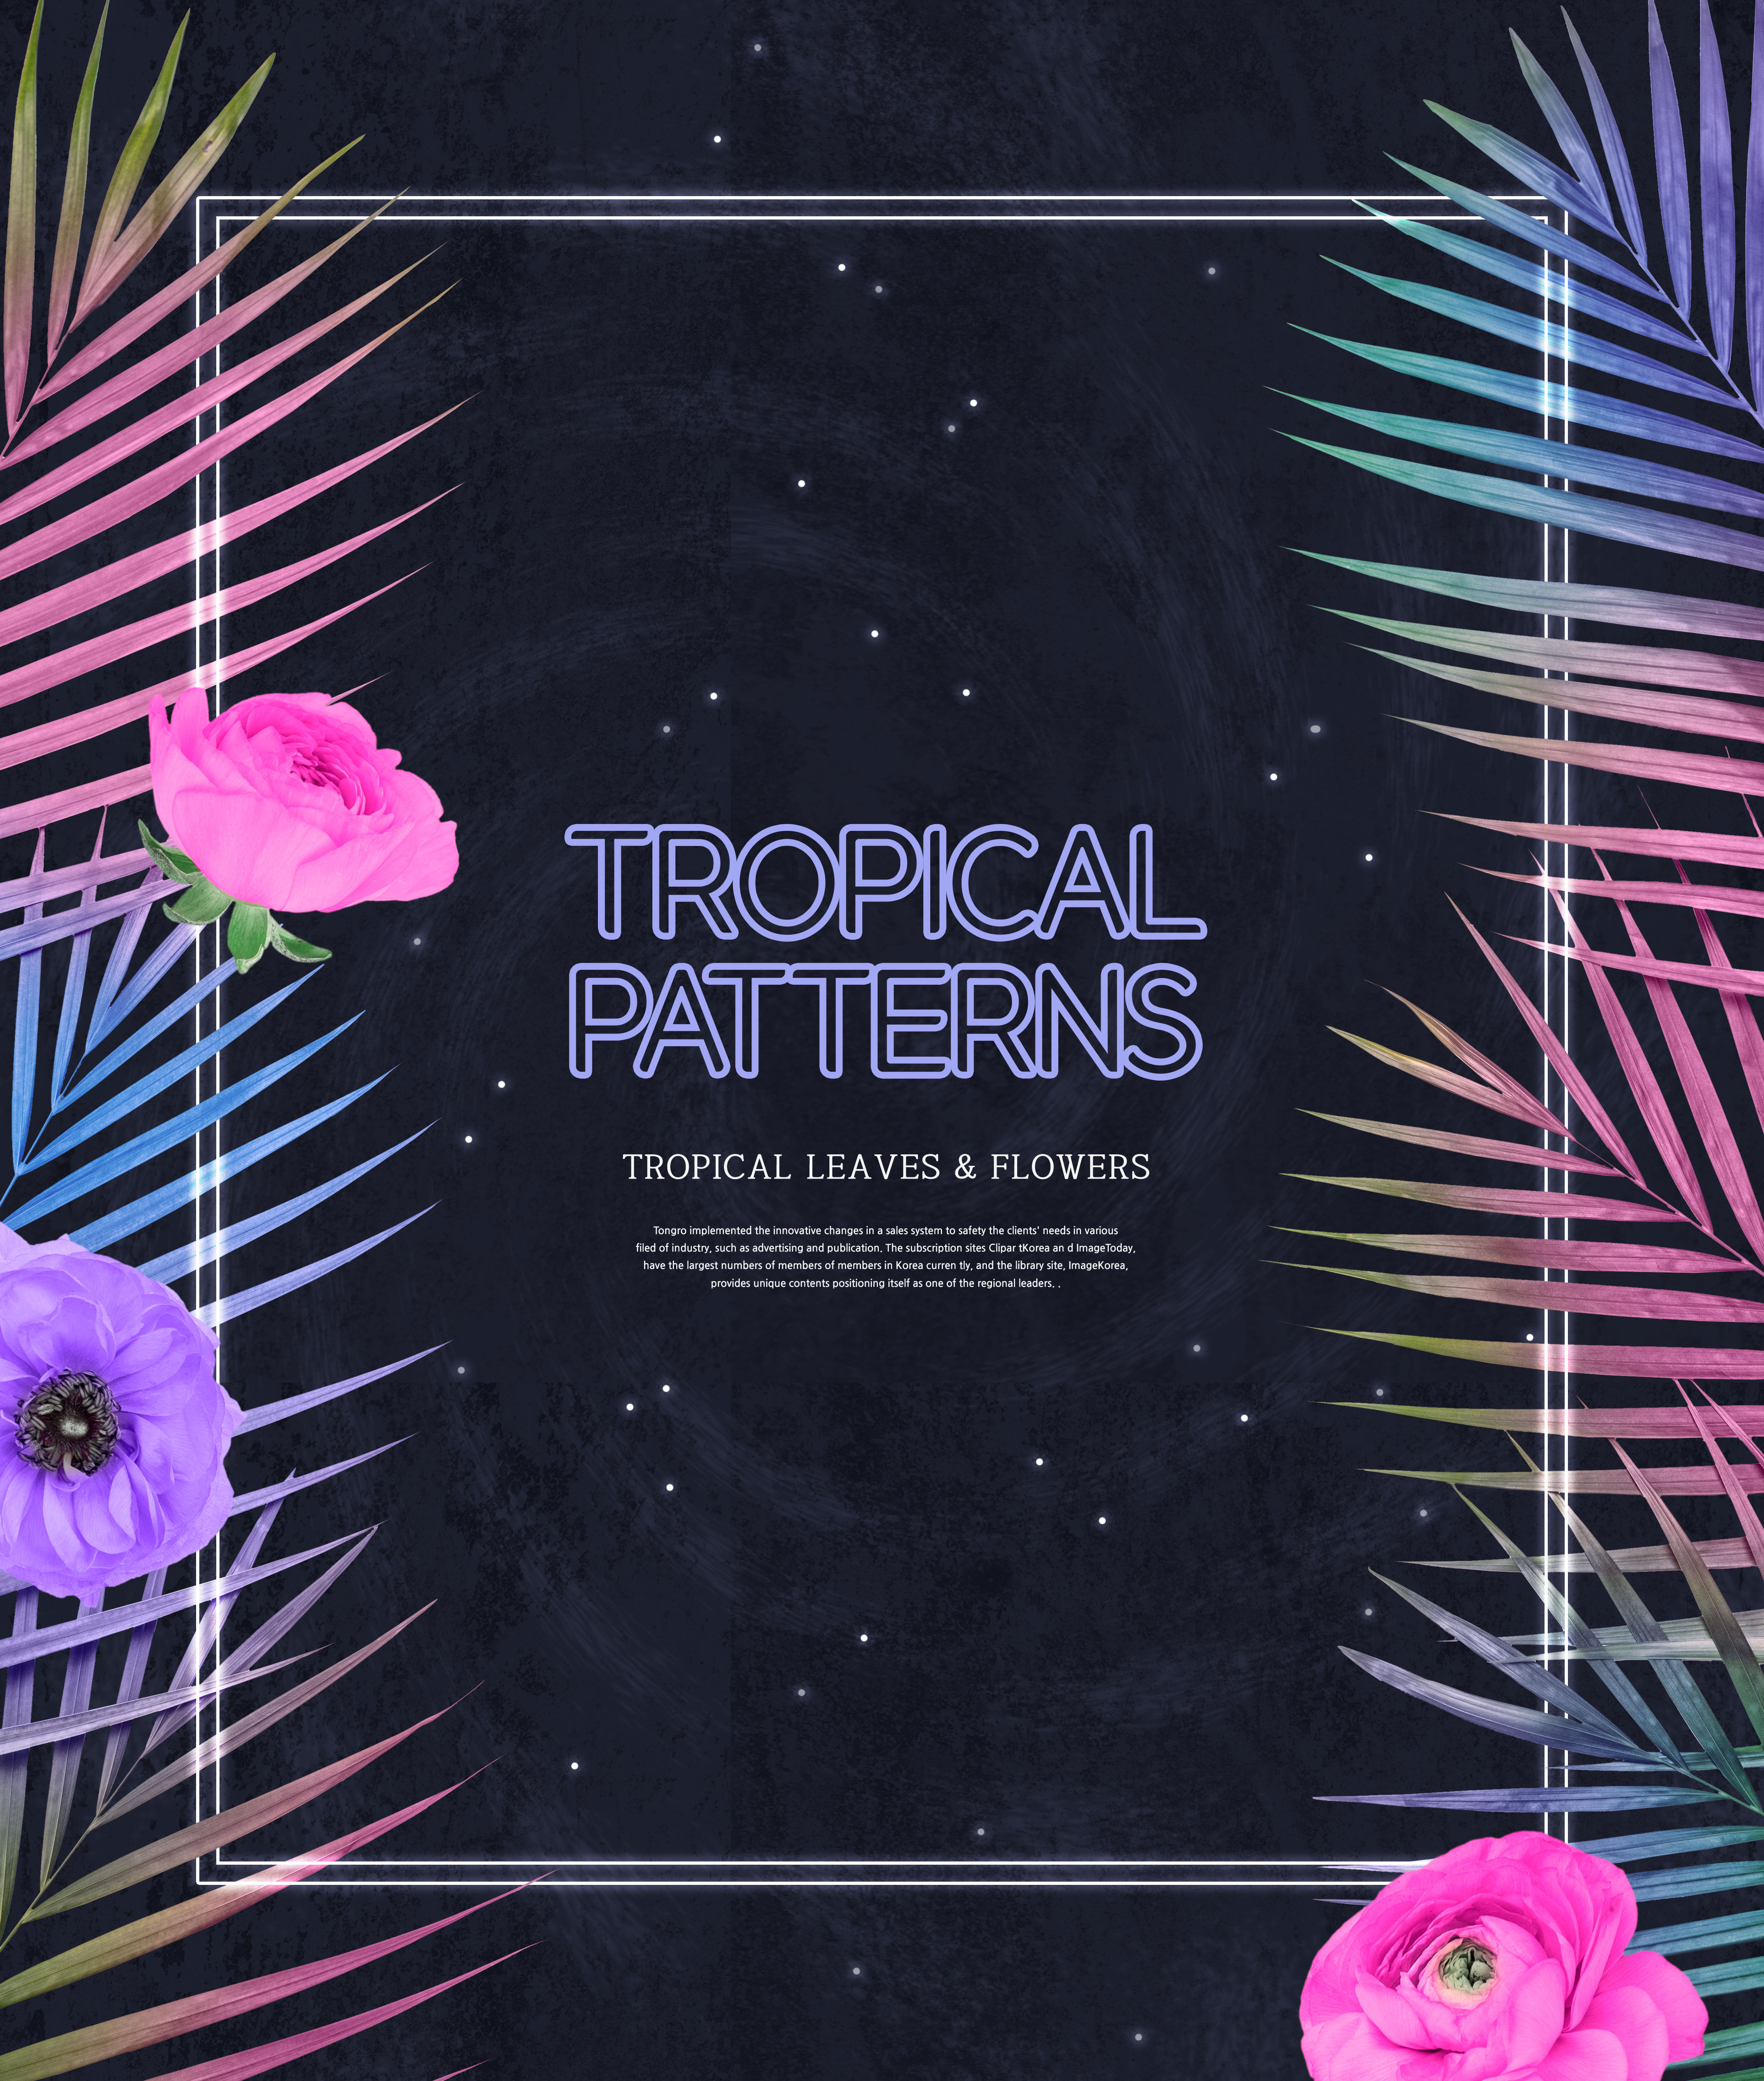 热带植物叶子&花卉图案海报设计素材插图(1)